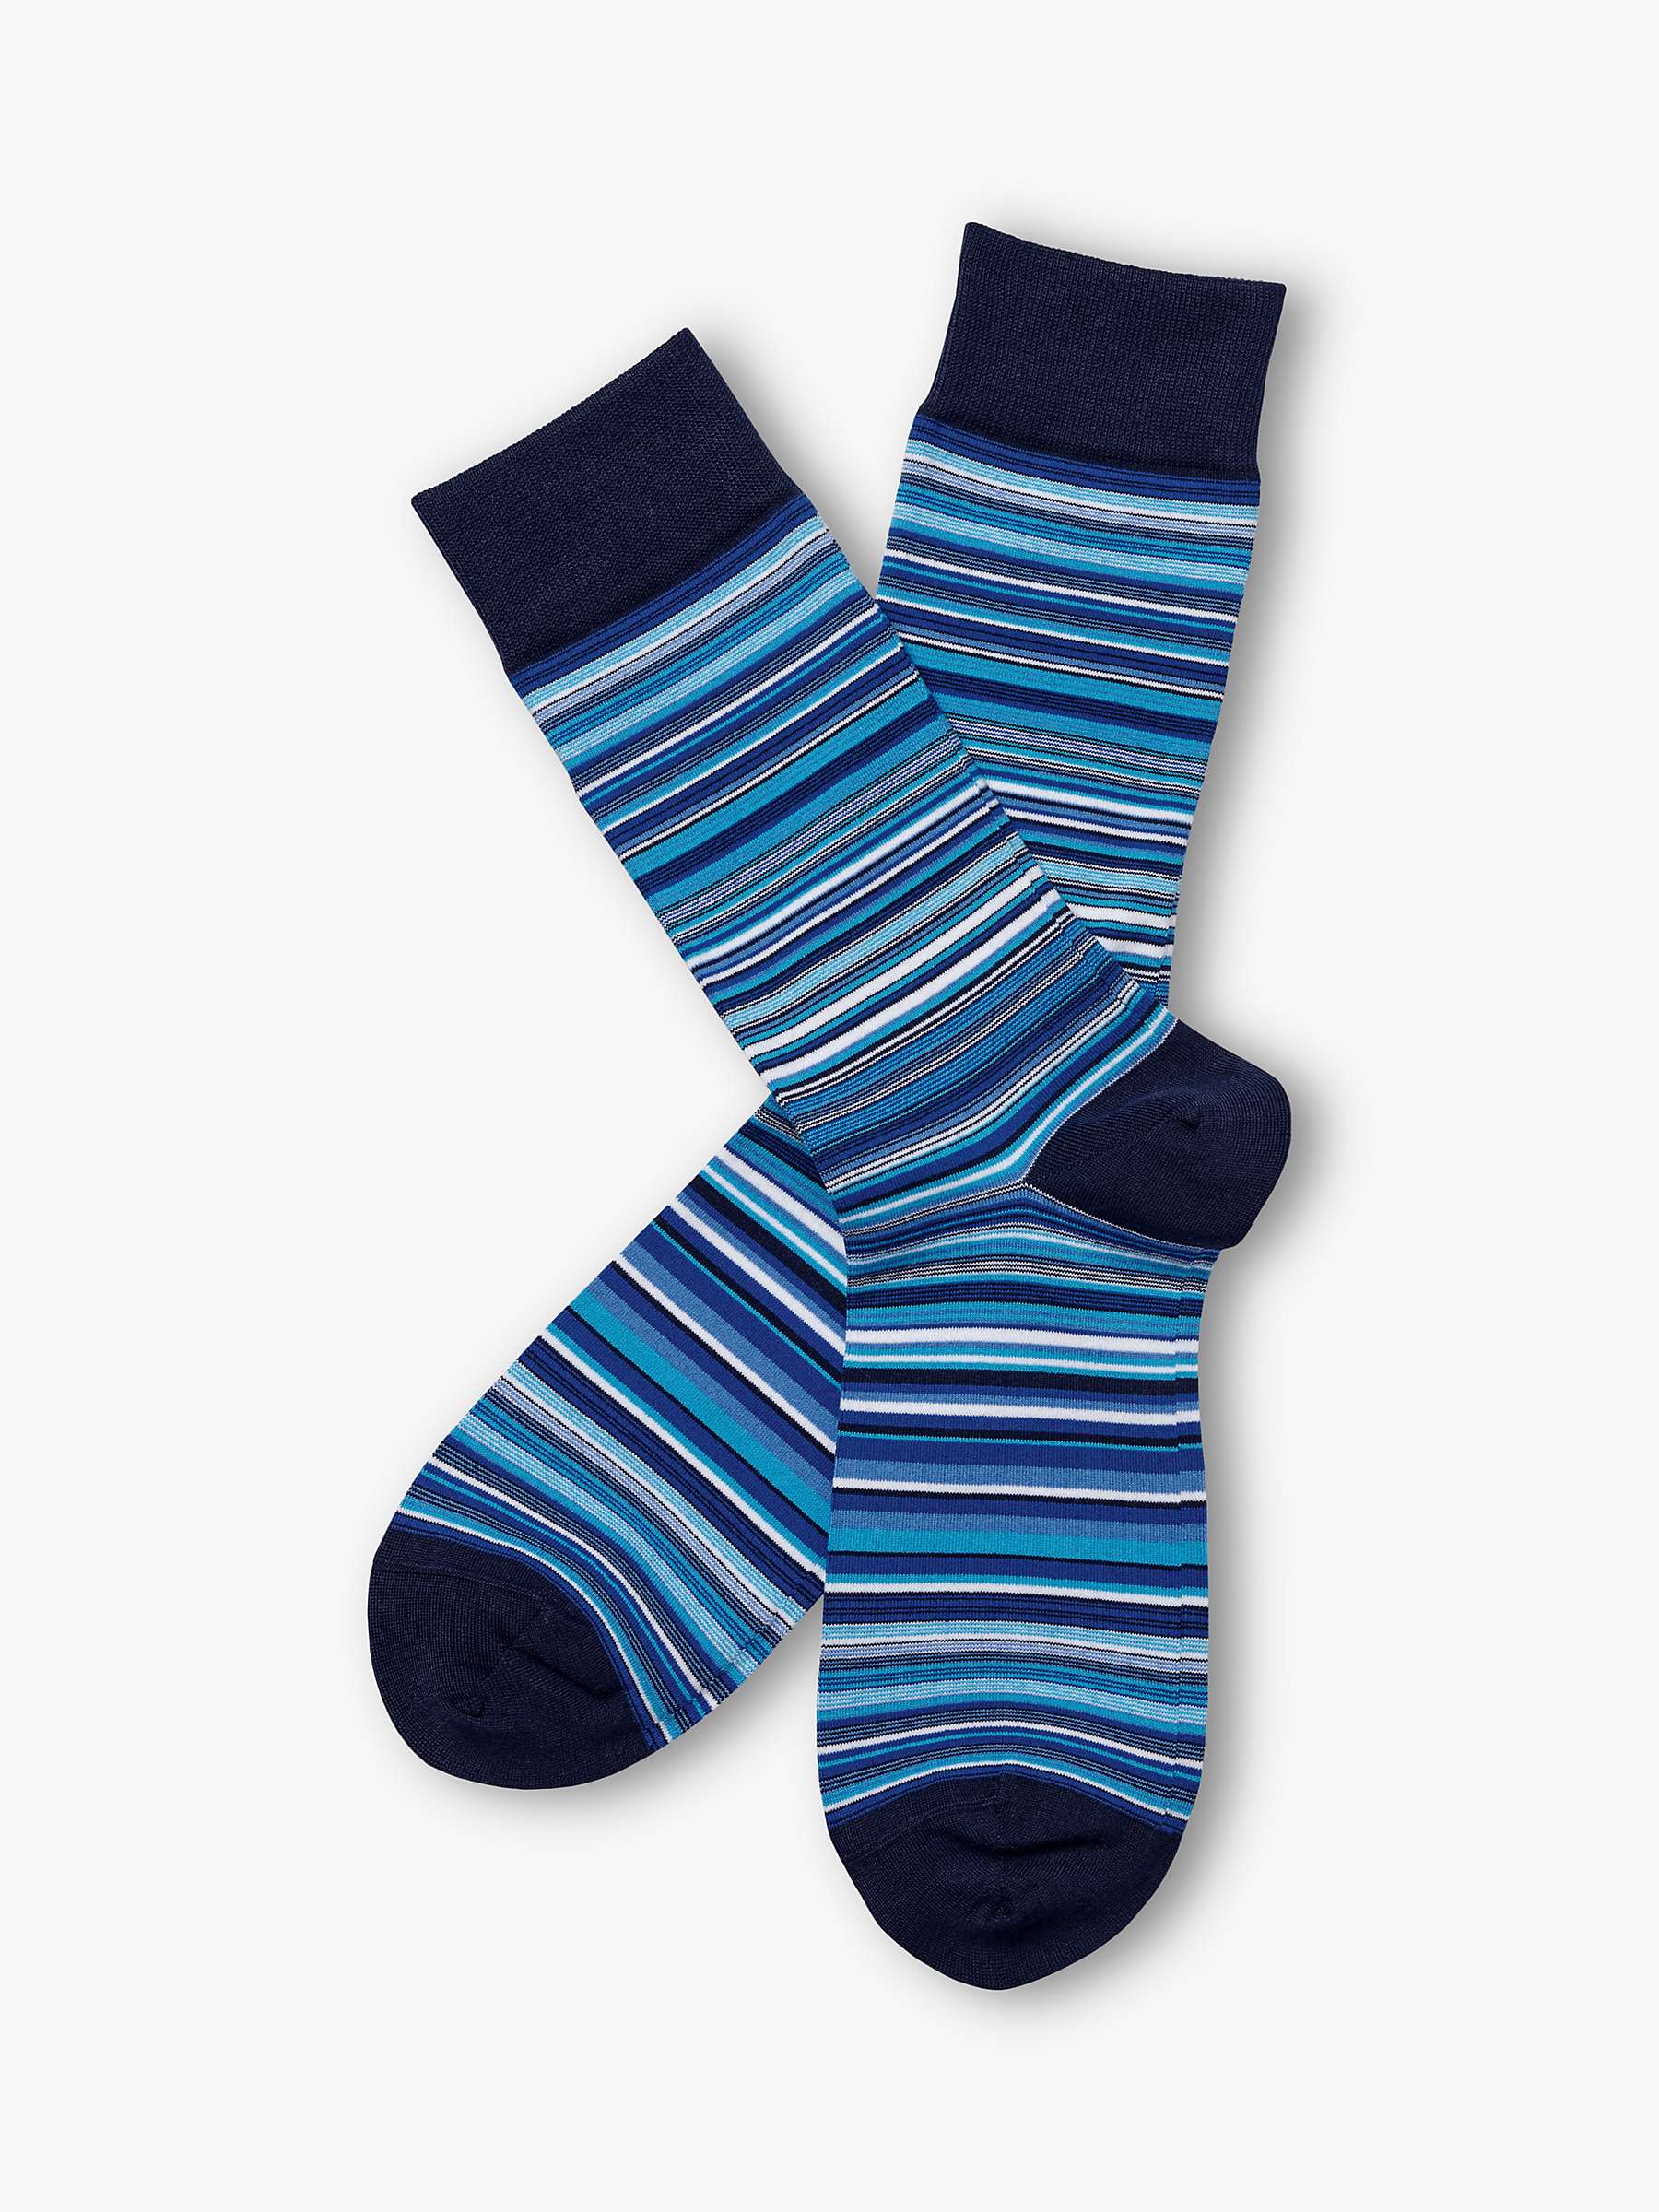 Buy Charles Tyrwhitt Stripe Ankle Socks Online at johnlewis.com